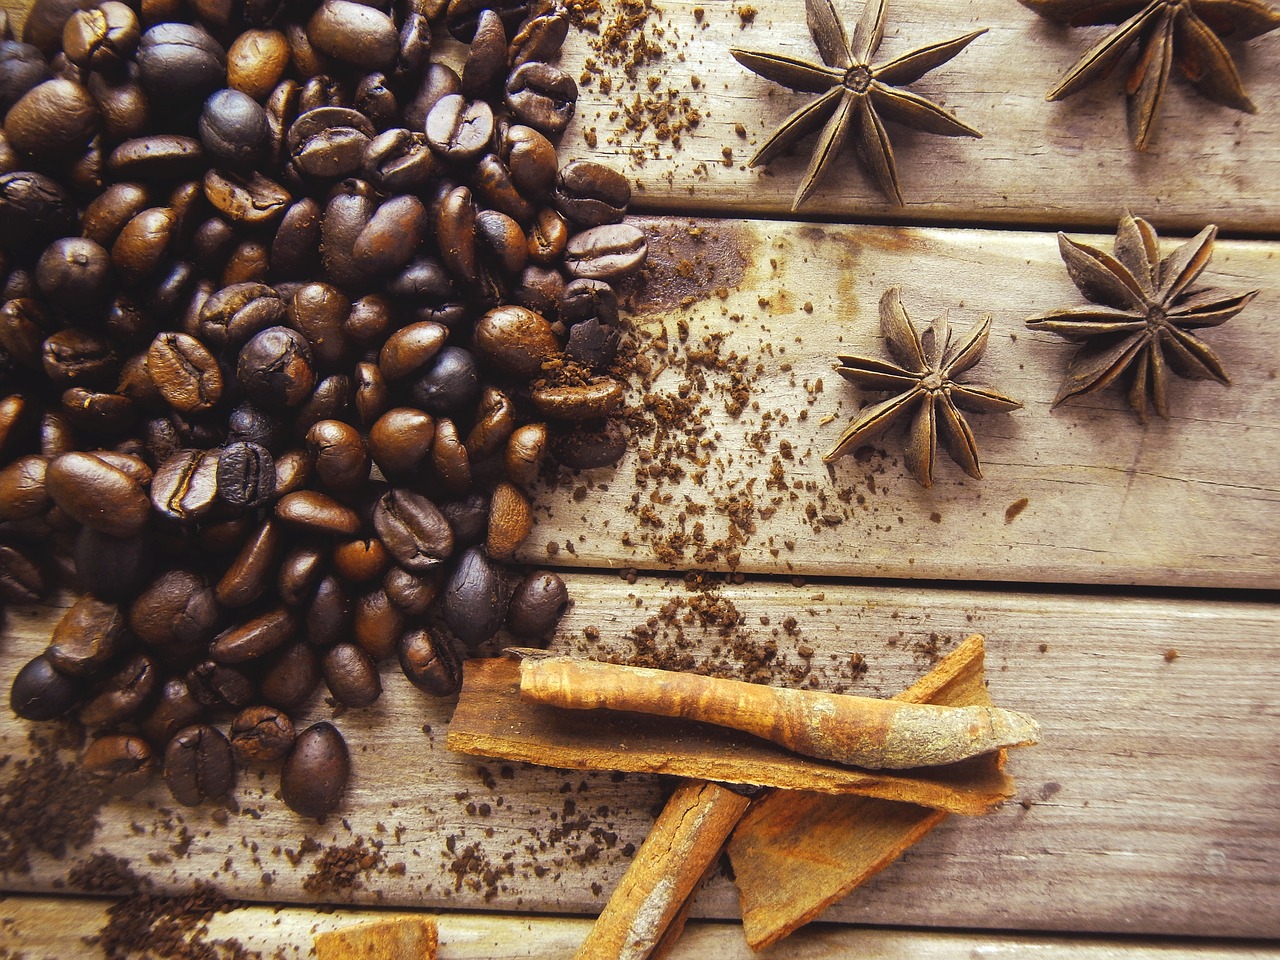 Image - coffe coffee cinnamon anis aromas